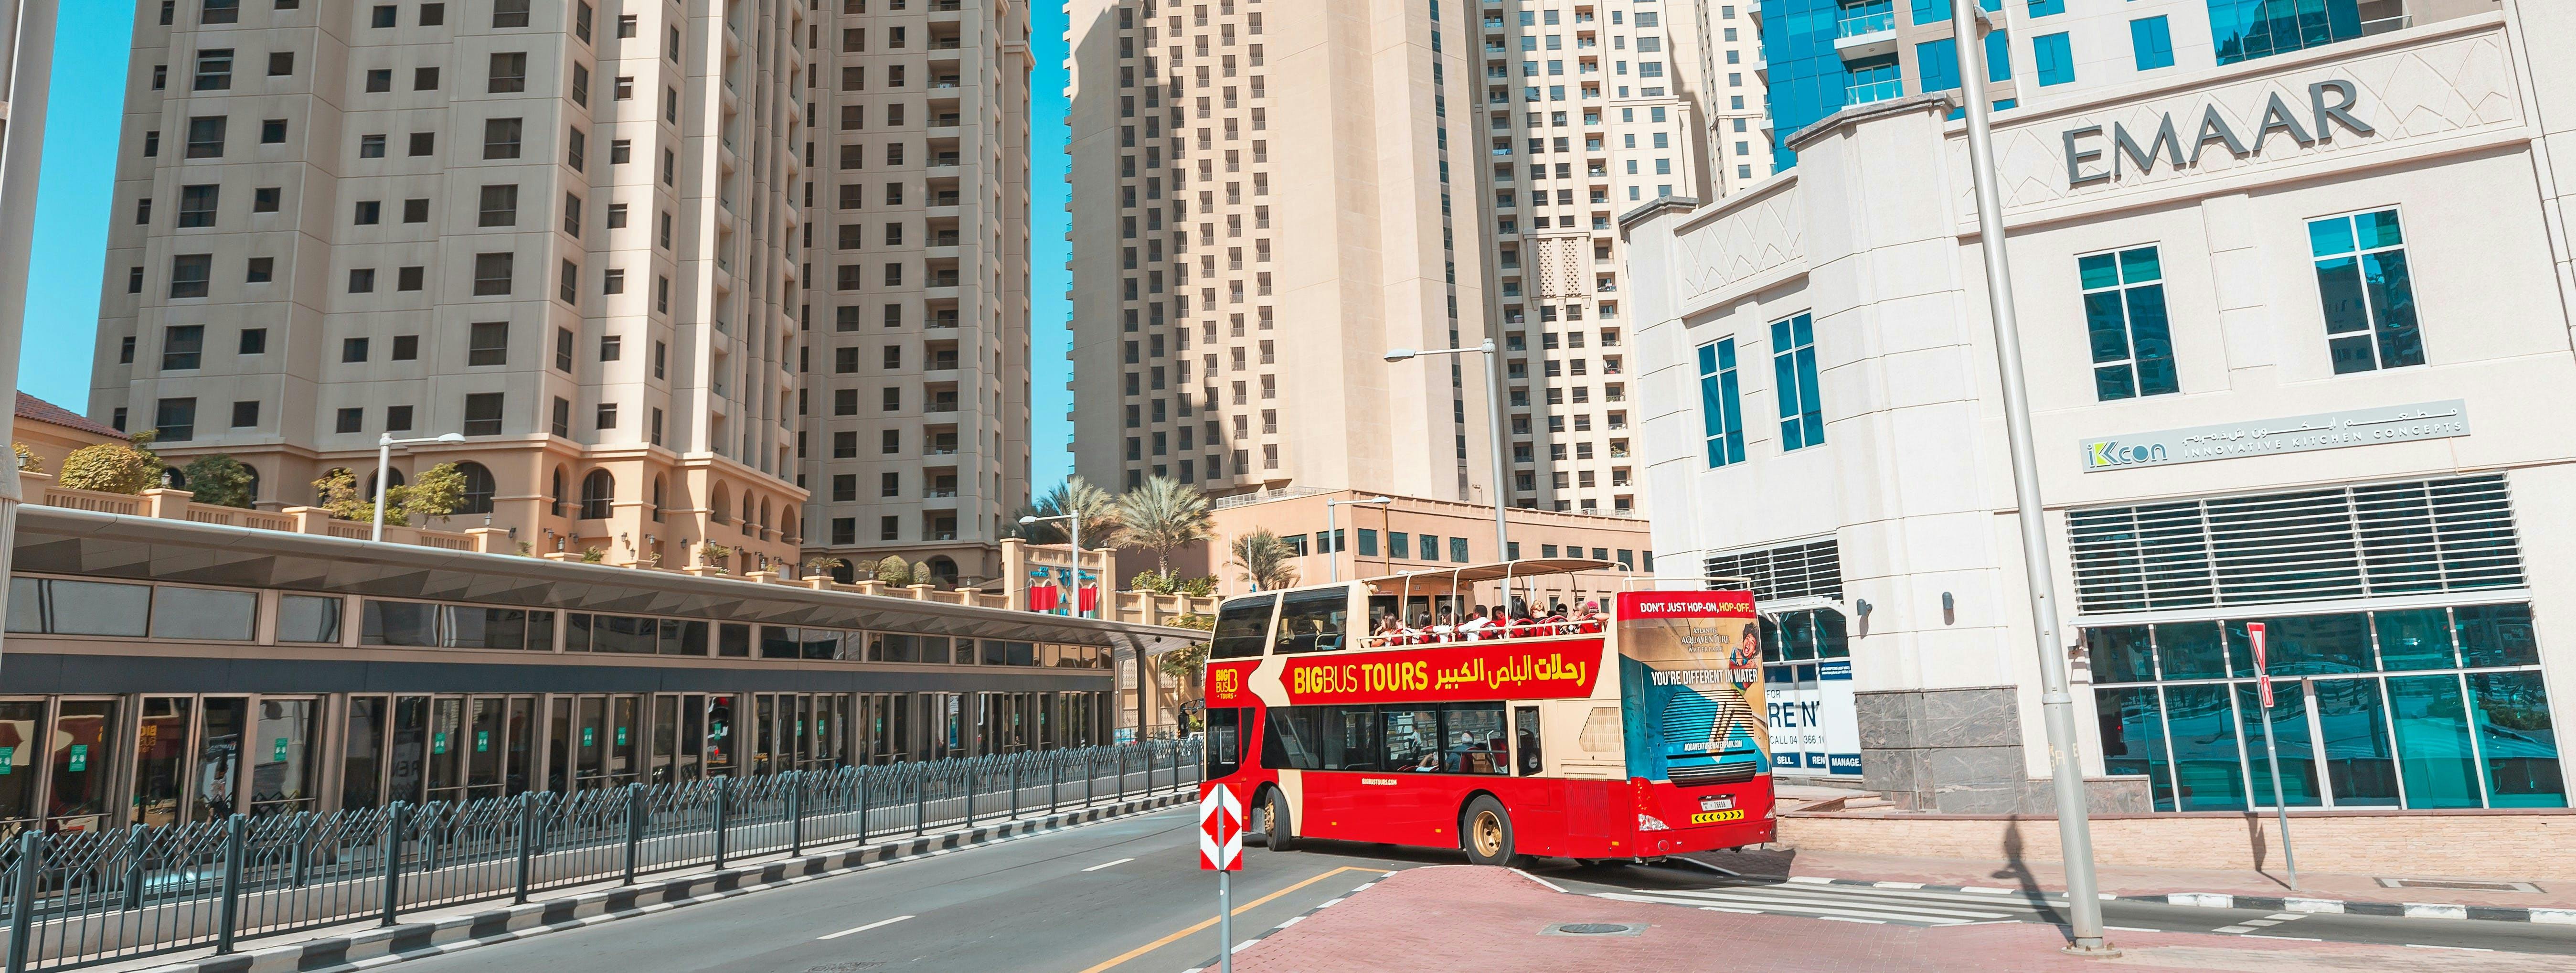 Recorrido en Big Bus por Dubái